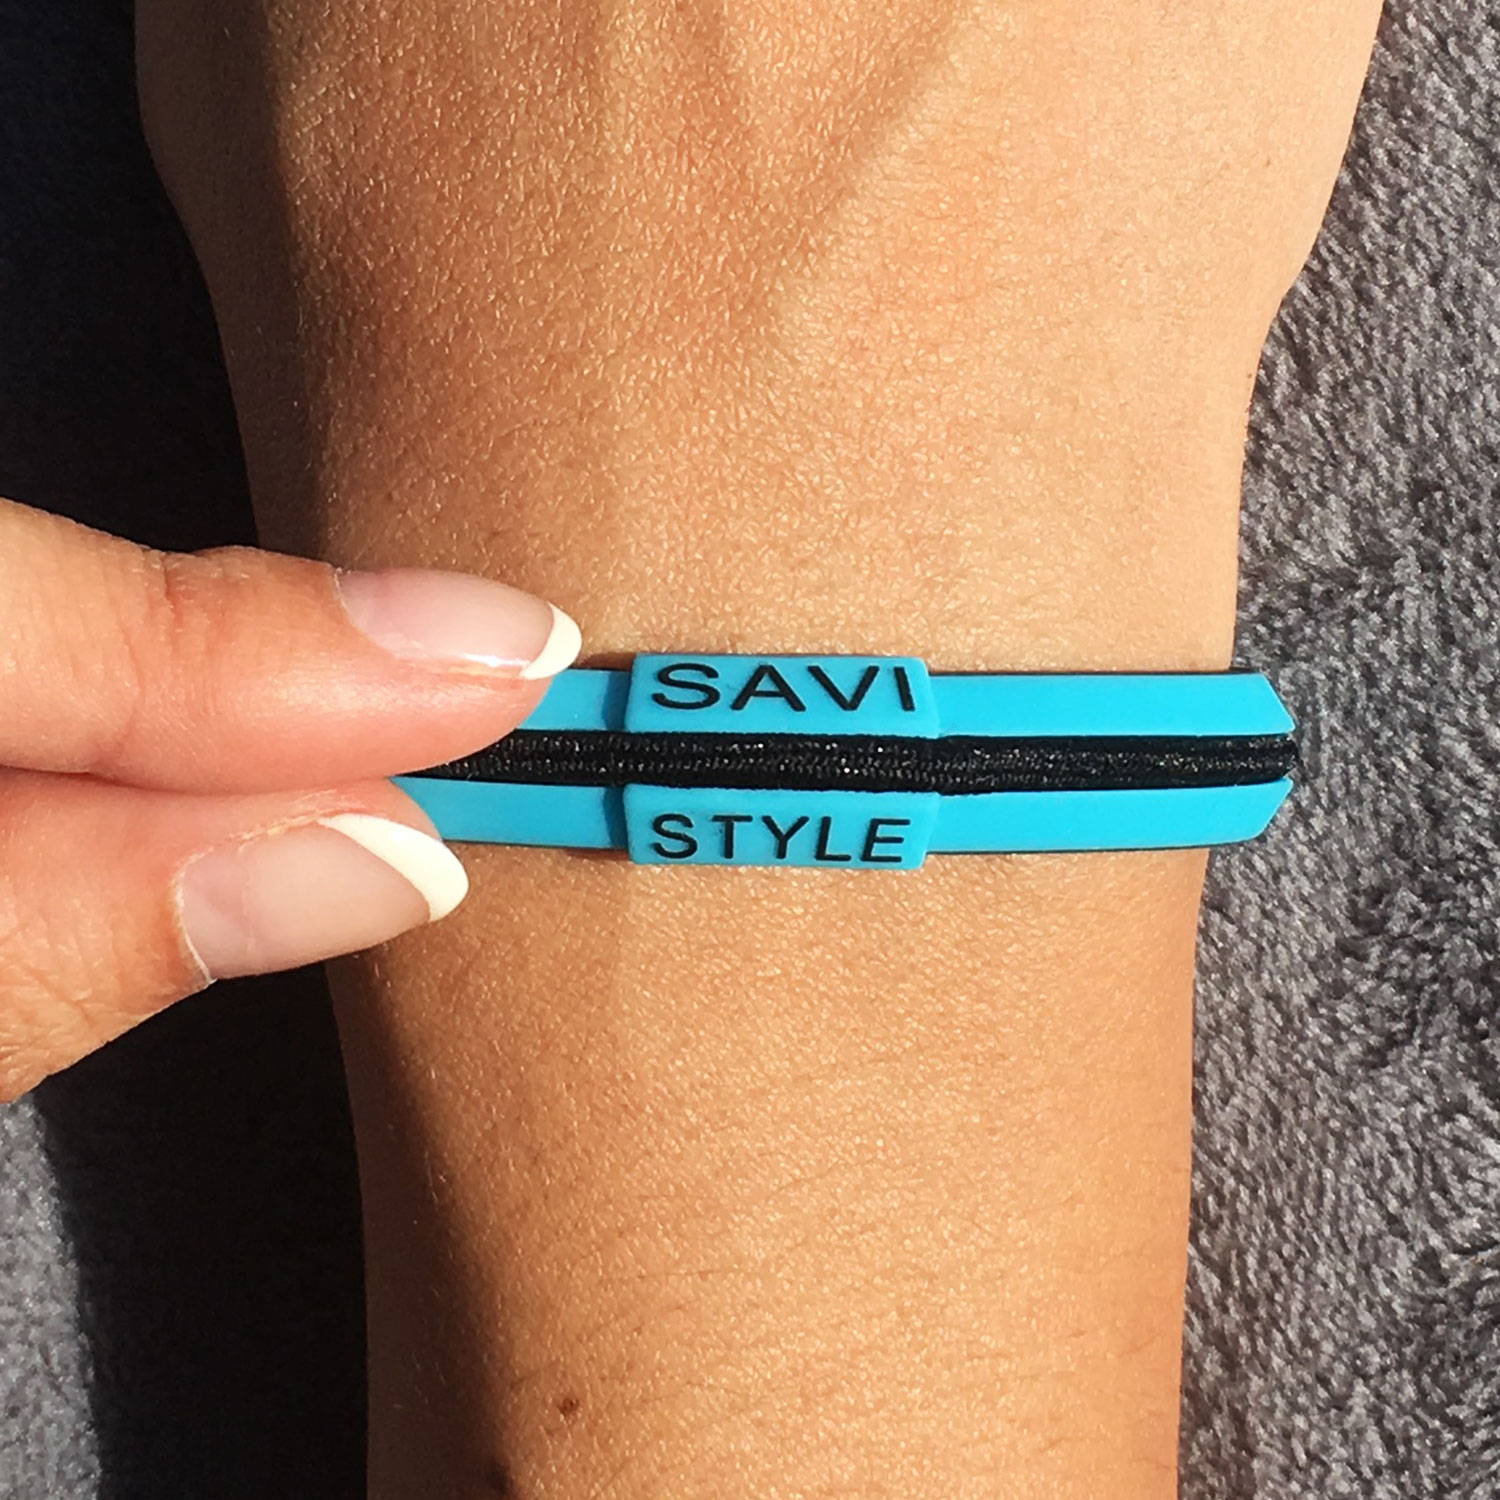 savi sleek by savistyle hair tie bracelet hypoallergenic and soft touch